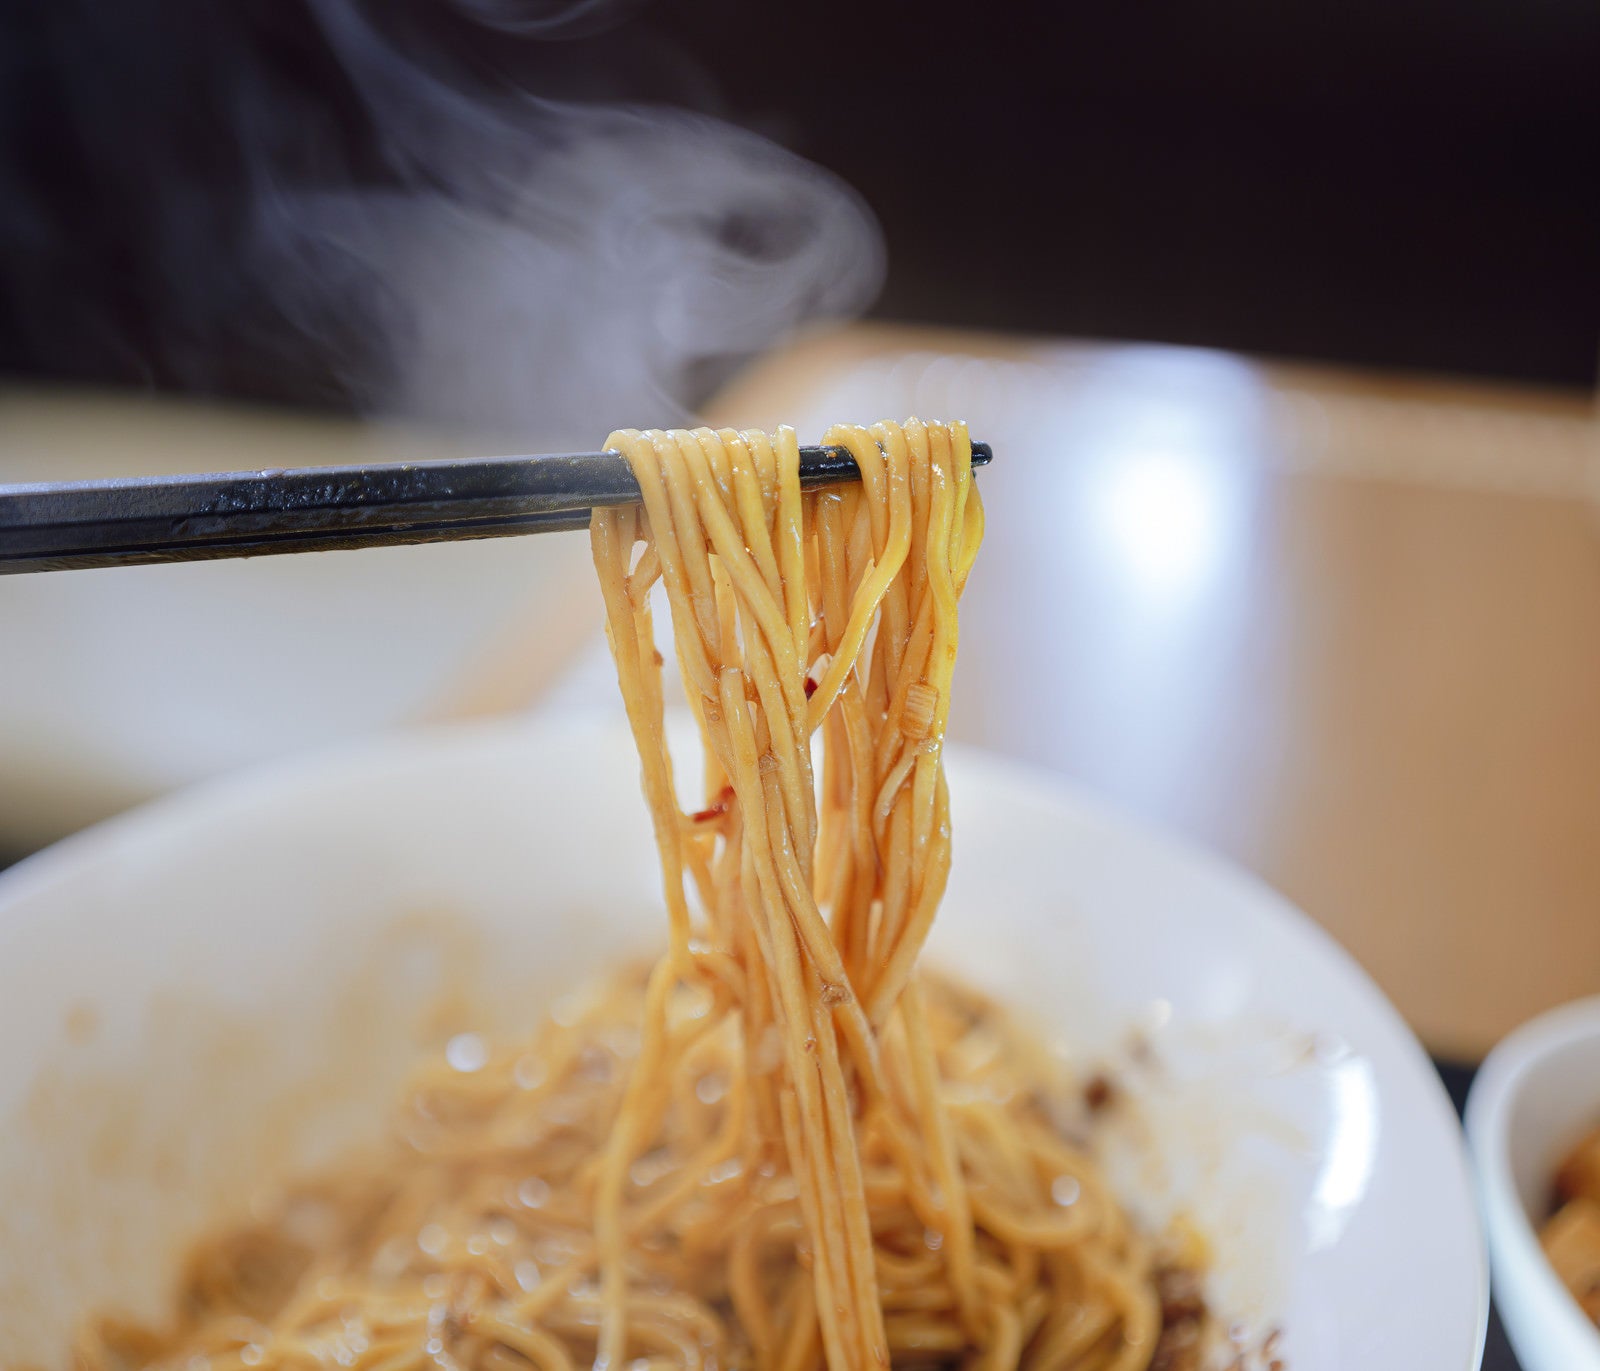 「熱々の汁なし担々麺を箸で持ち上げる」の写真